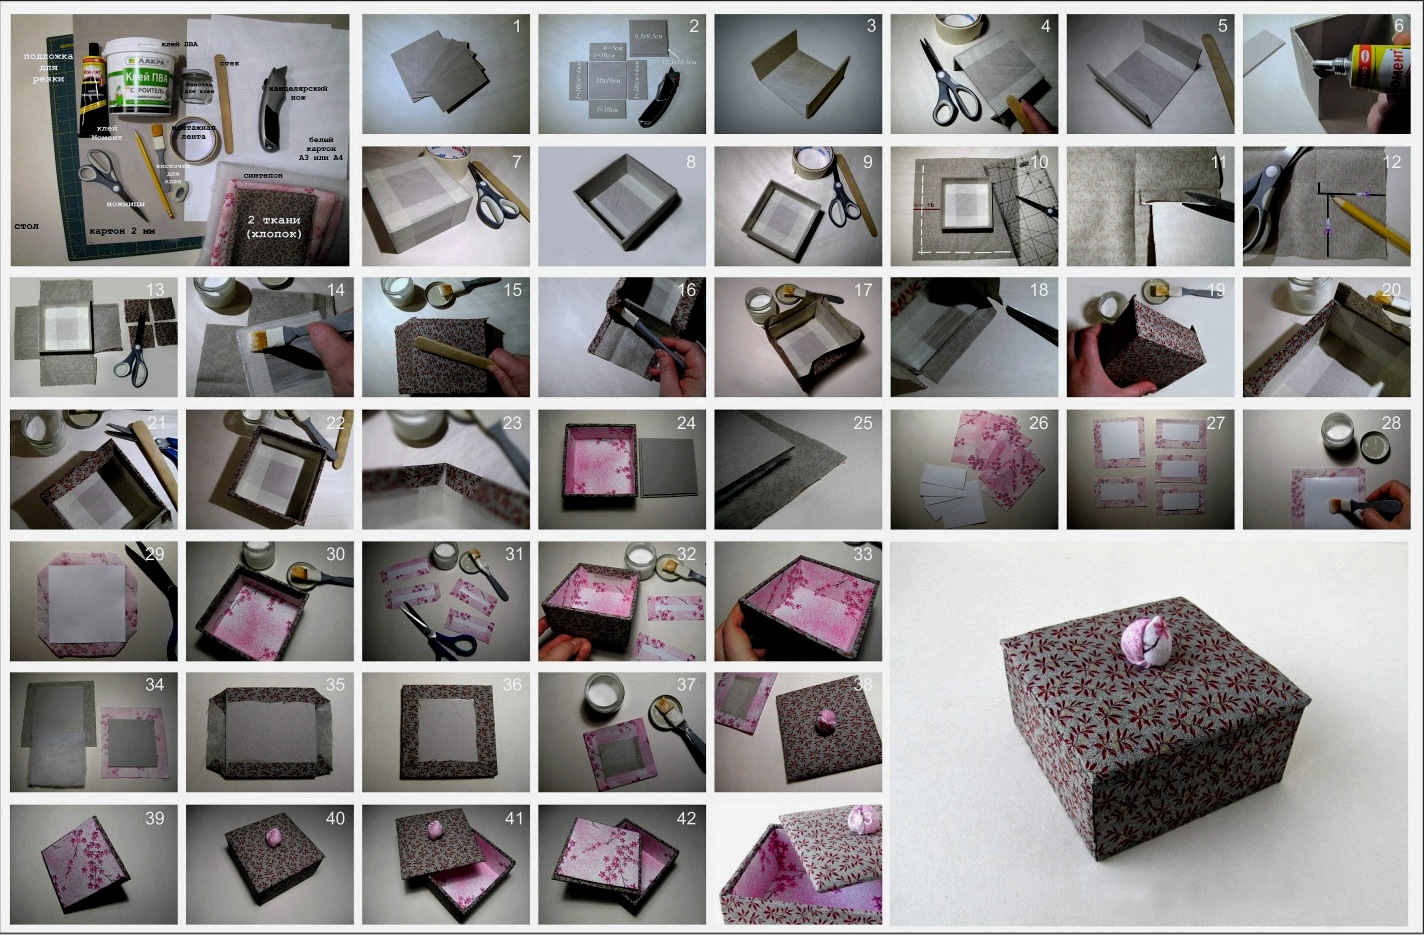 Caja: materiales, simplificarse y ser más serios, decoración, secretos